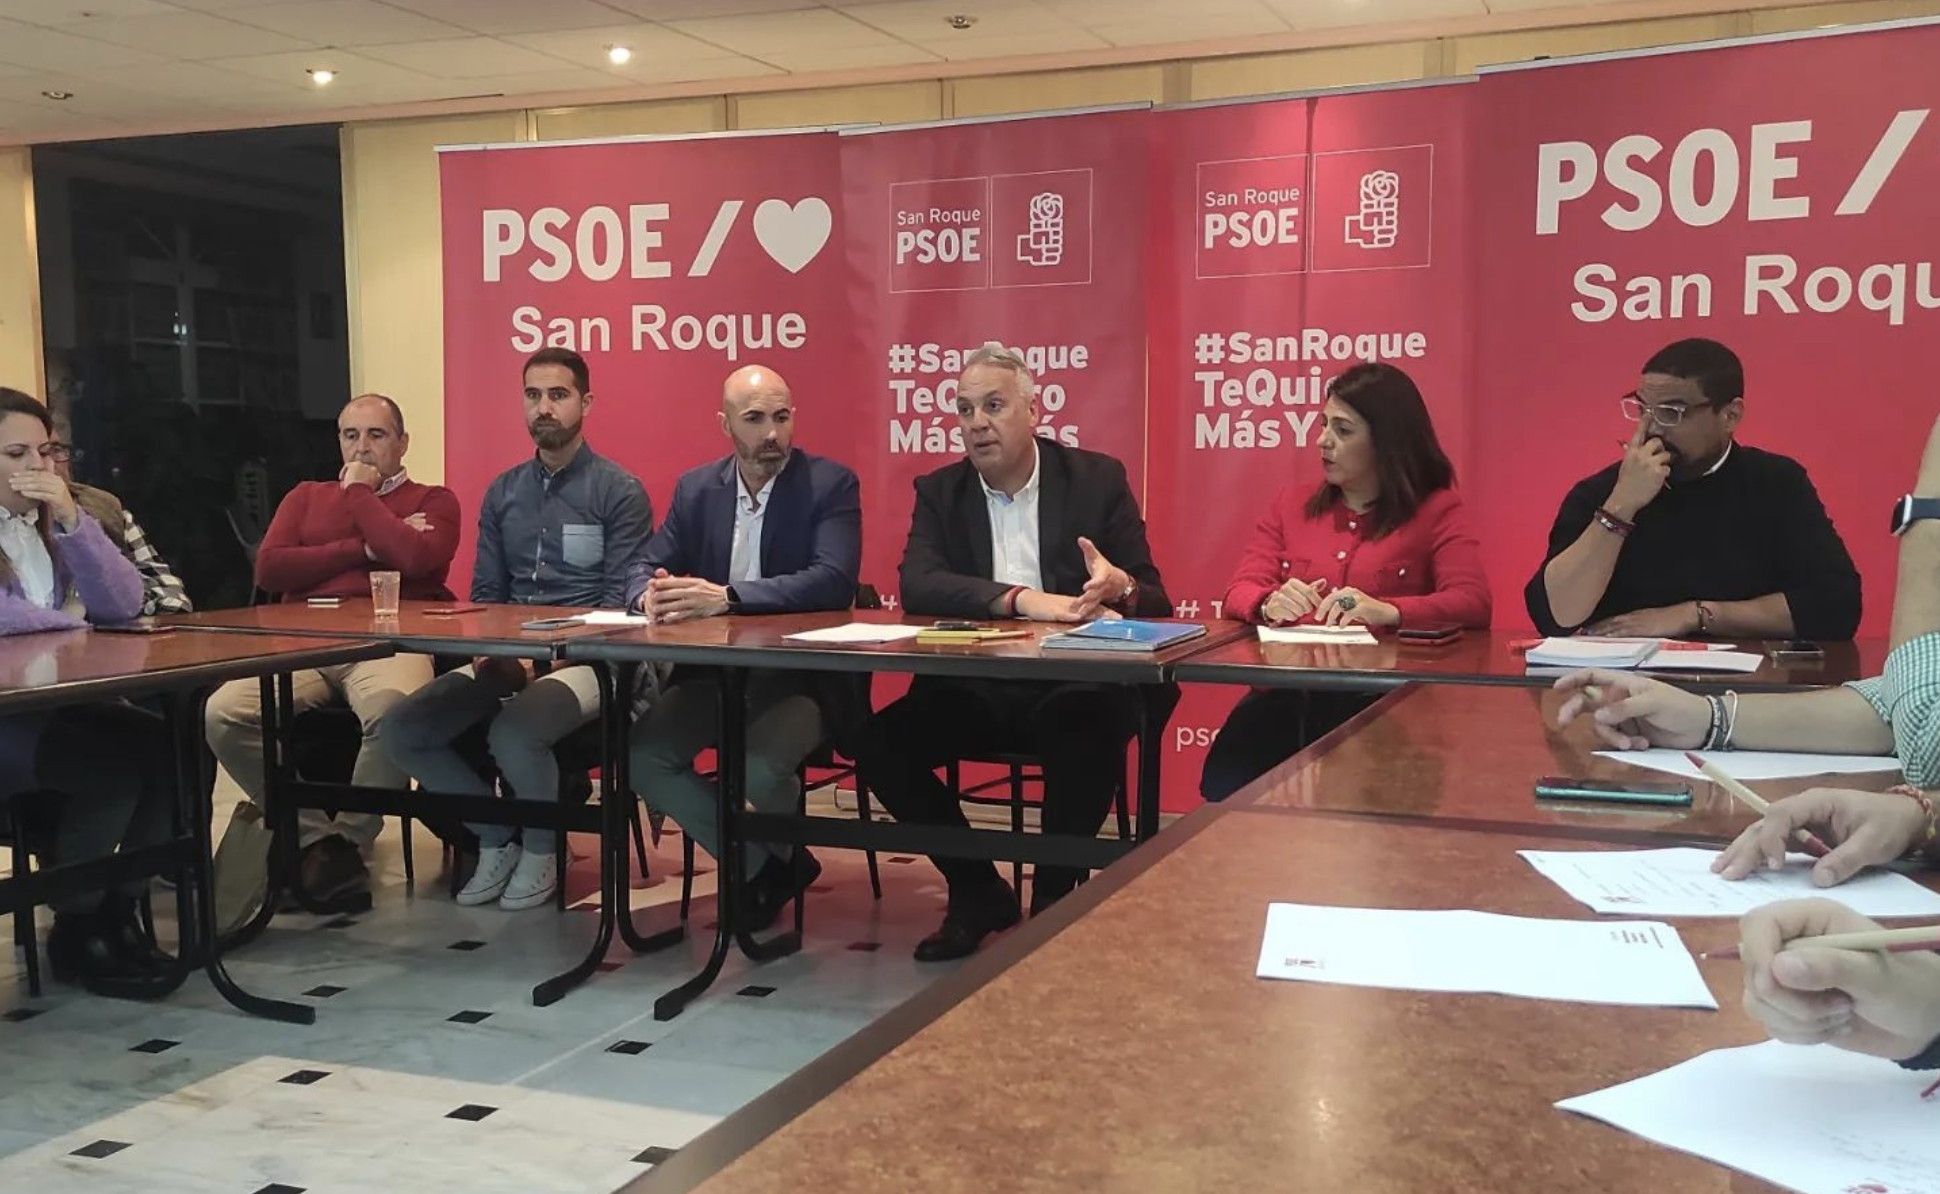 Ruiz Boix acelera a cuatro meses y medio del 28M: "Quiero ampliar la mayoría absoluta en San Roque".